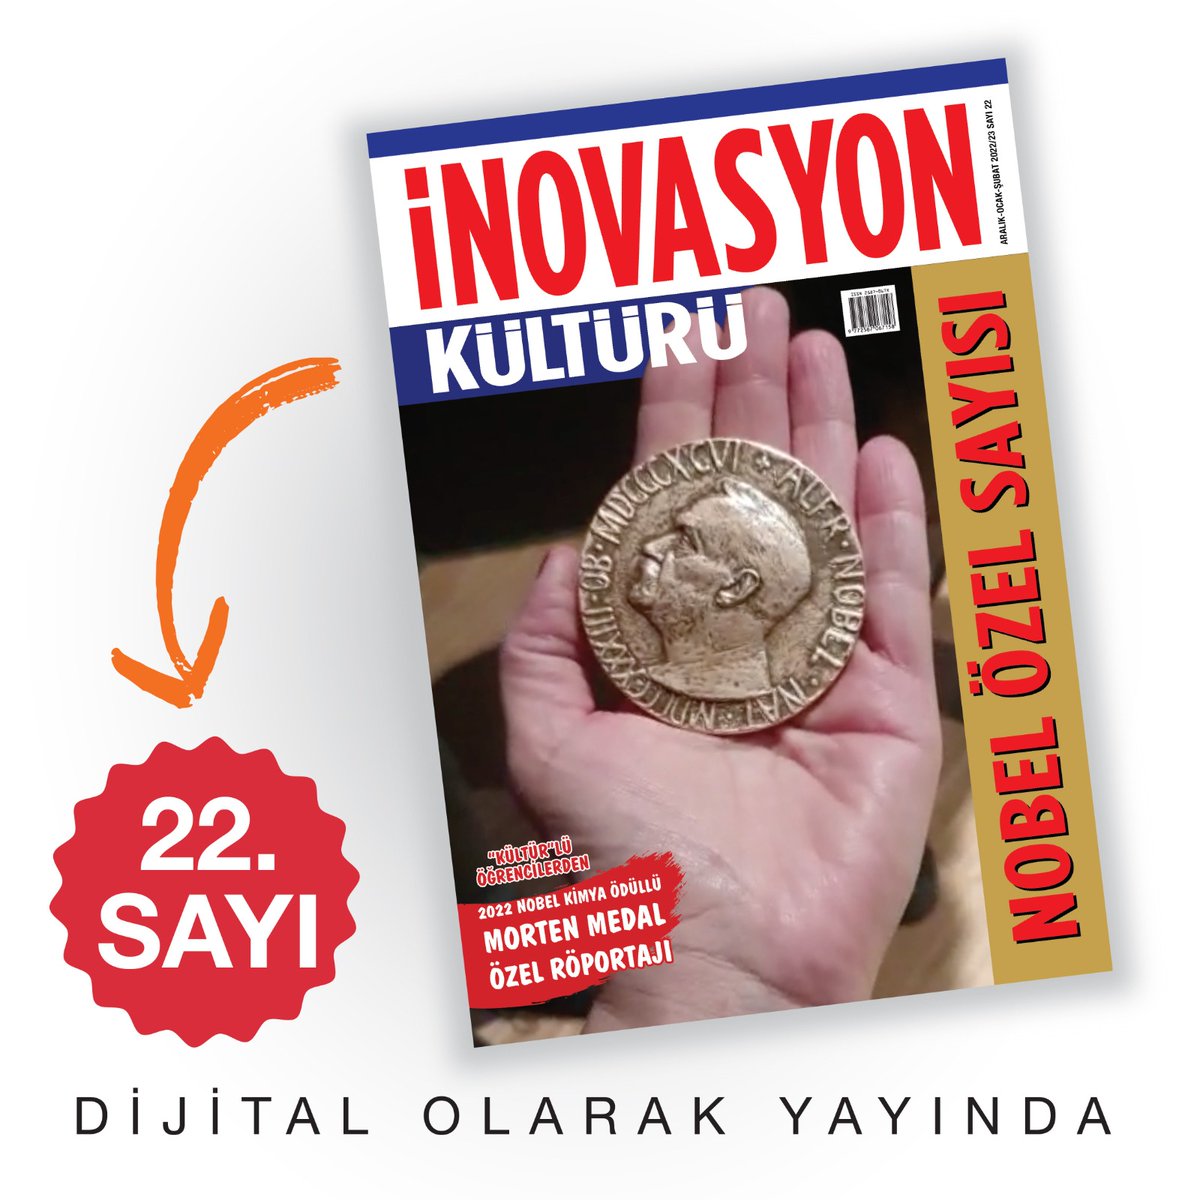 İnovasyon Kültürü Nobel Özel sayısı dijitalde yayınlandı! inovasyonkulturu.com